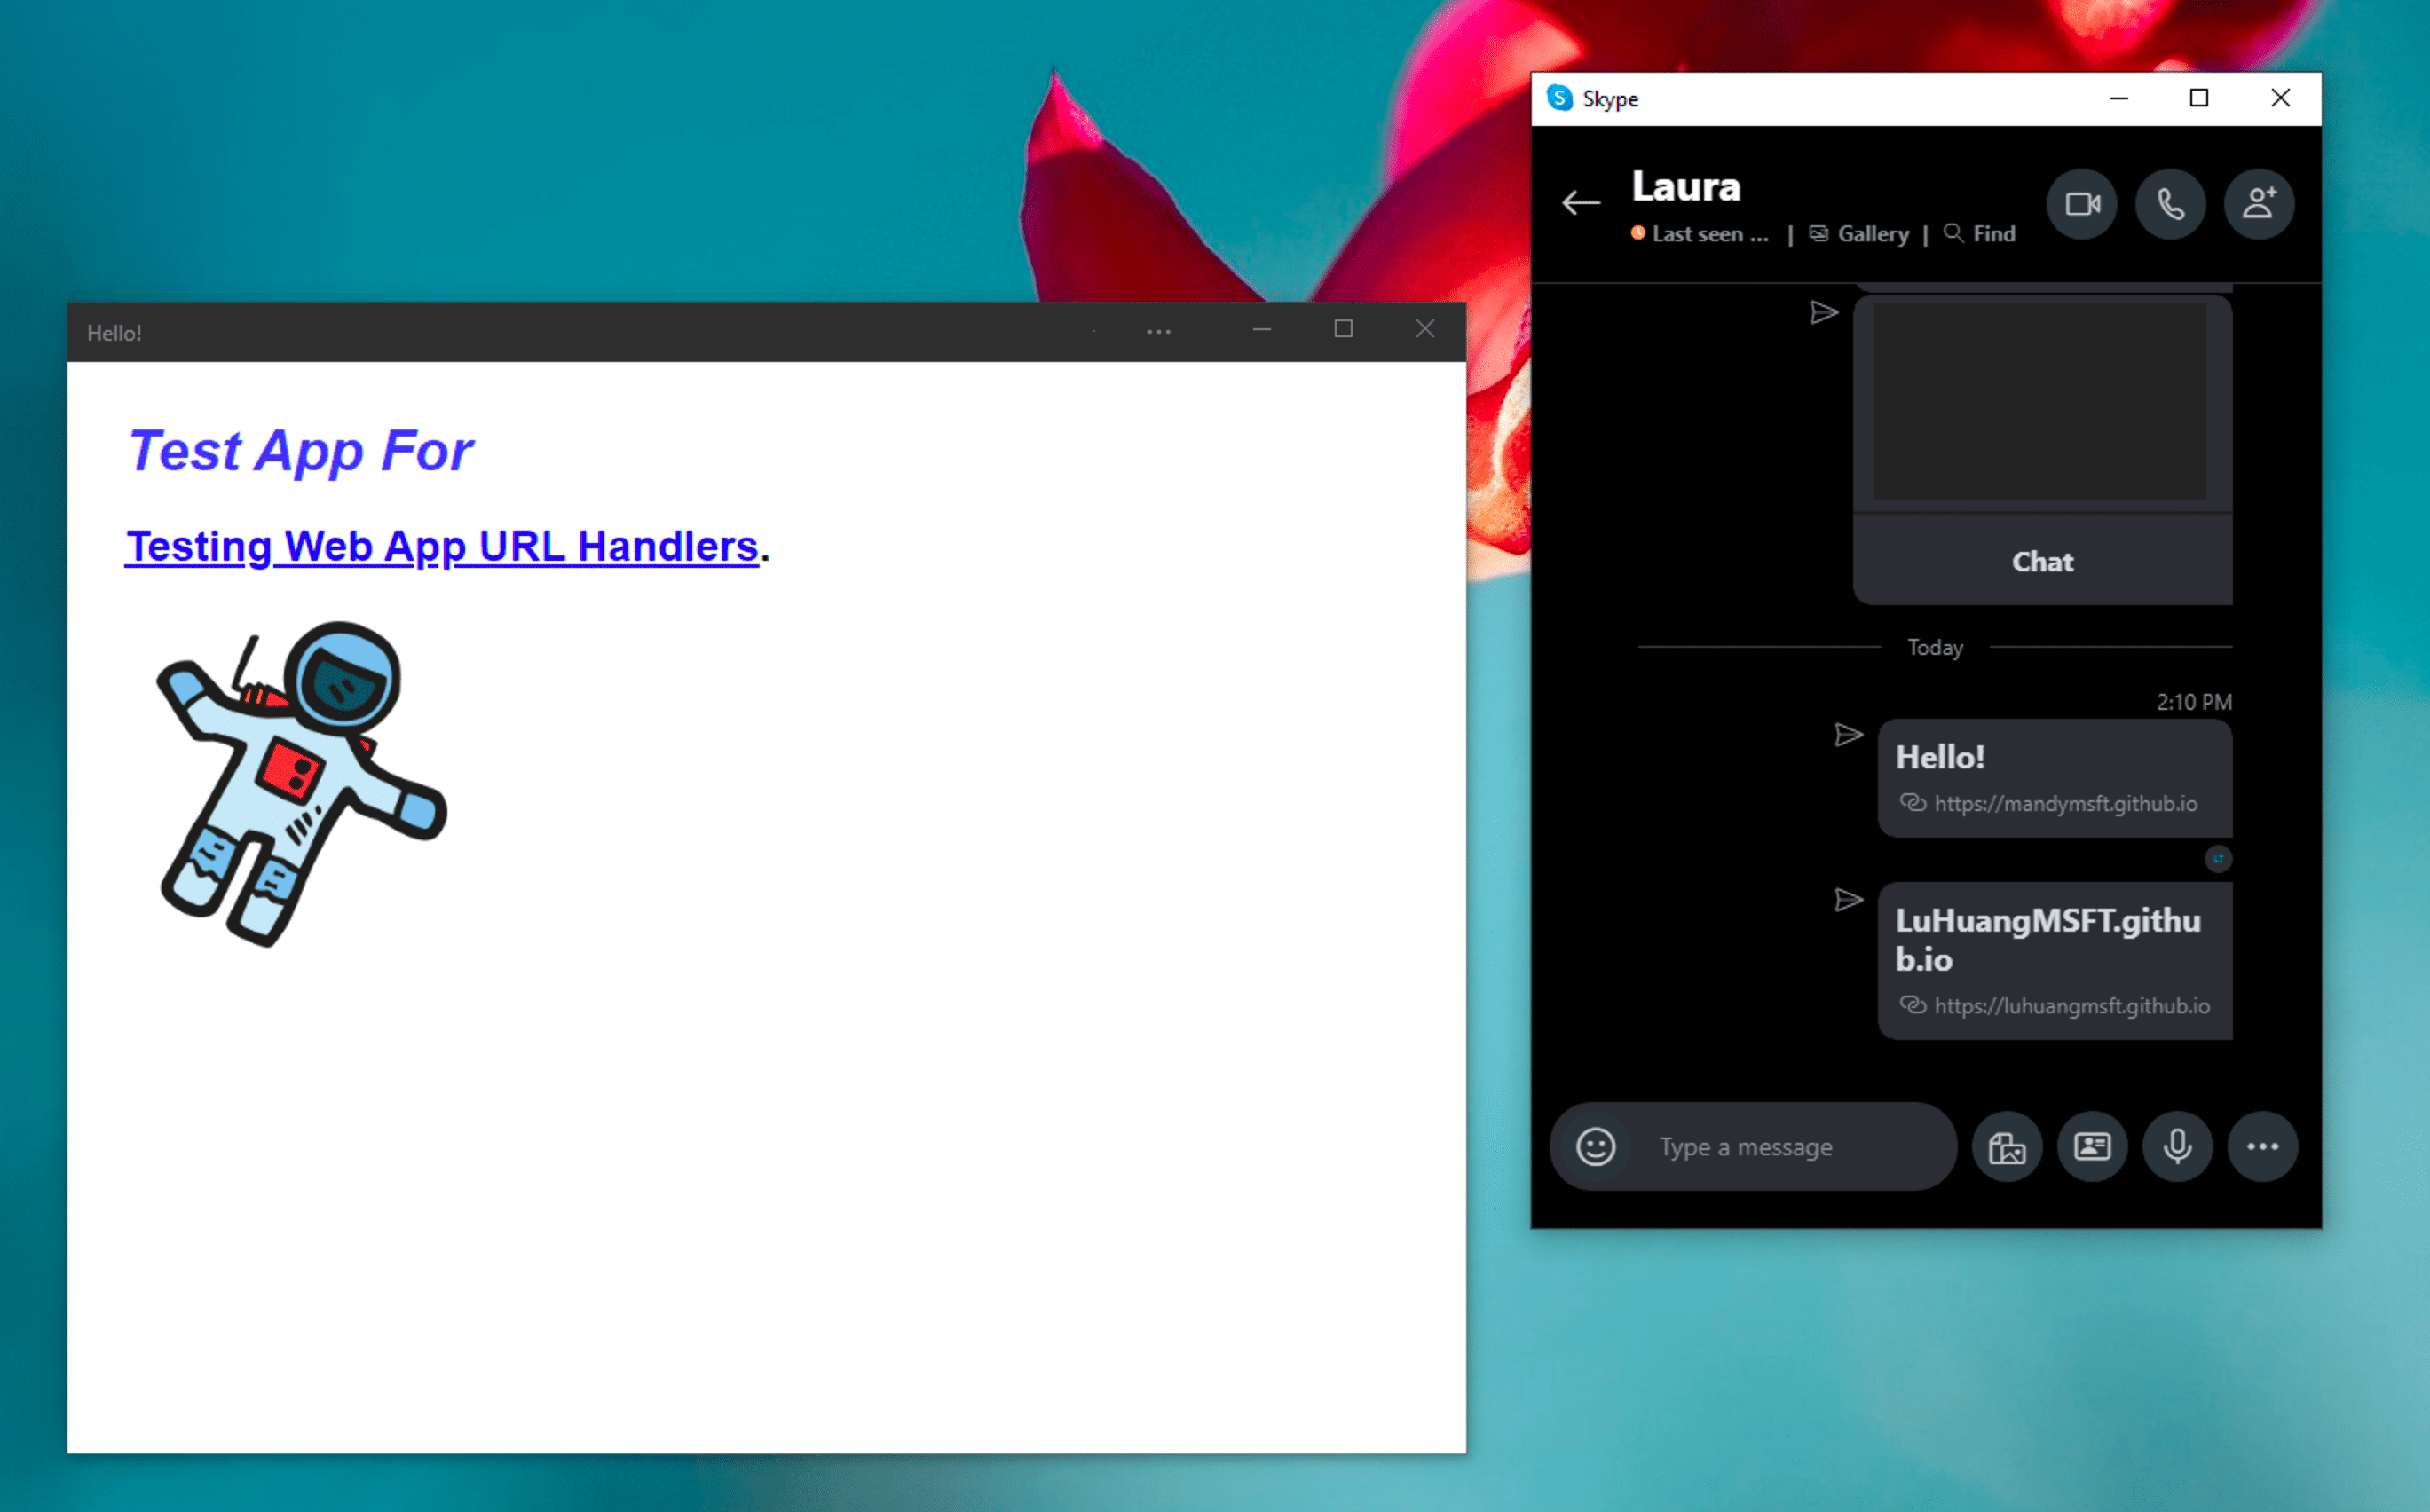 インストール済みのデモ PWA の隣にある Windows Skype インスタント メッセンジャー アプリ。Skype チャット メッセージ内のリンクをクリックすると、スタンドアロン モードで開きます。